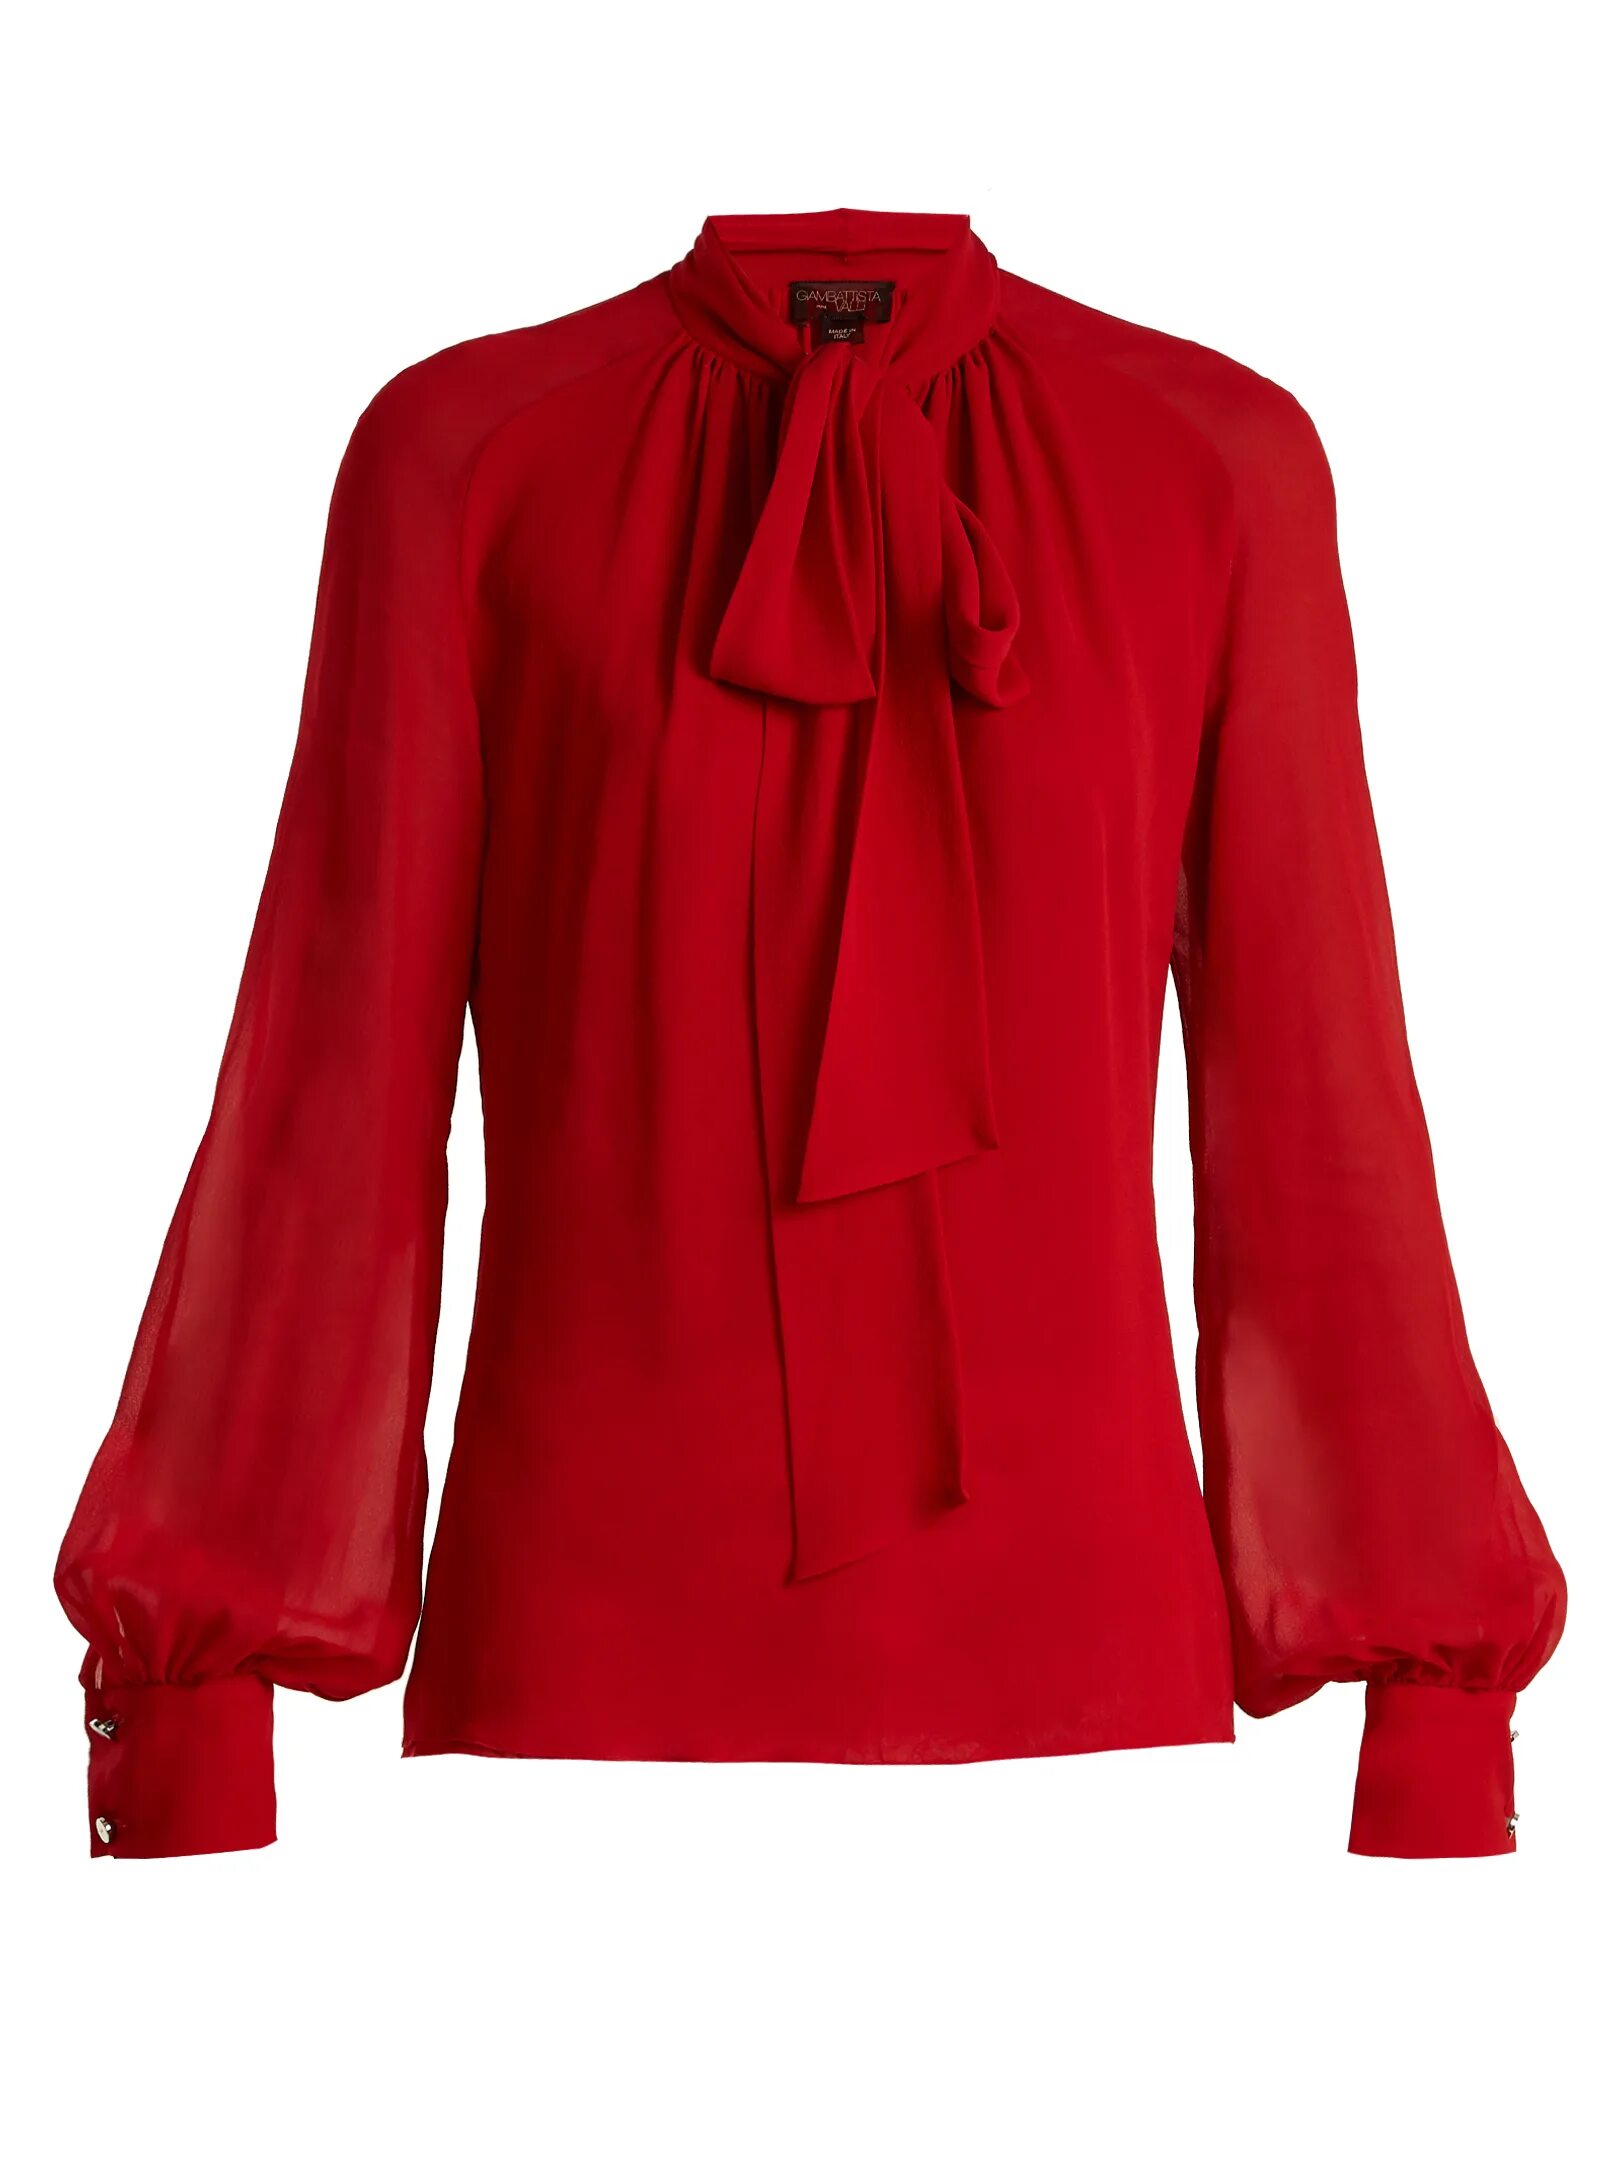 Красные блузки женская. Красная блуза. Красная нарядная блузка. Красная кофточка. Красная блузка с длинным рукавом.